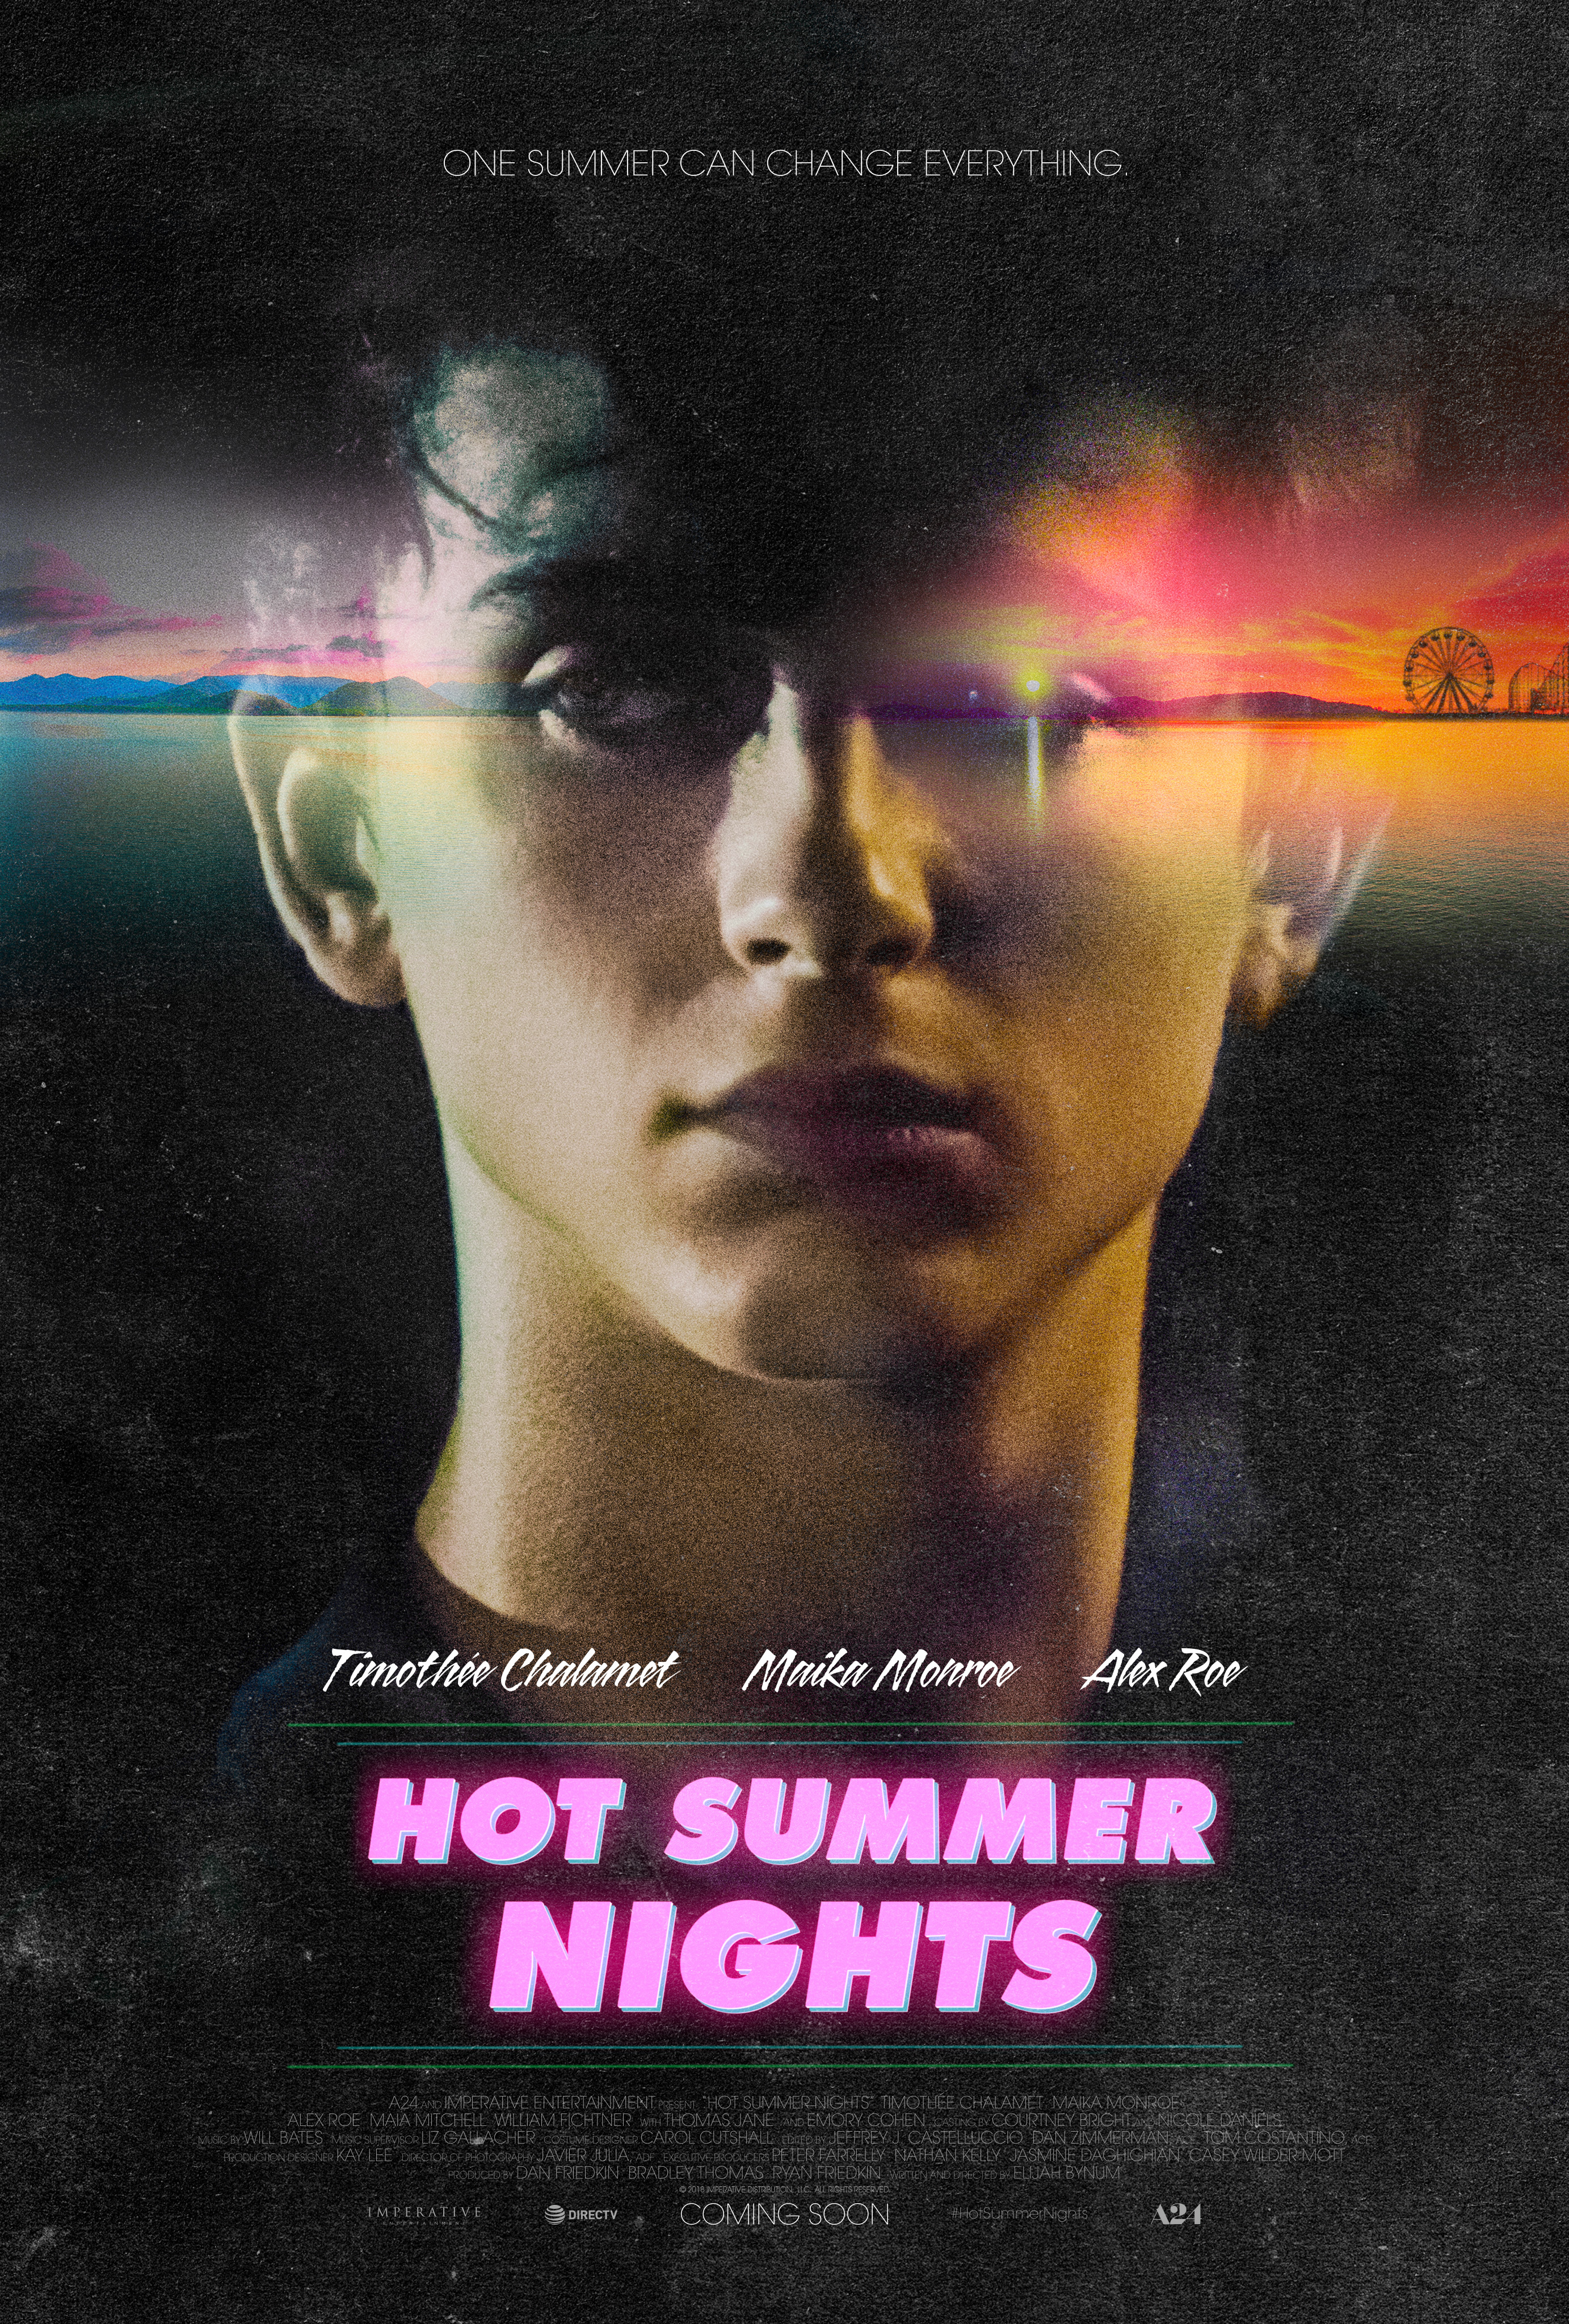 Nonton film Hot Summer Nights layarkaca21 indoxx1 ganool online streaming terbaru